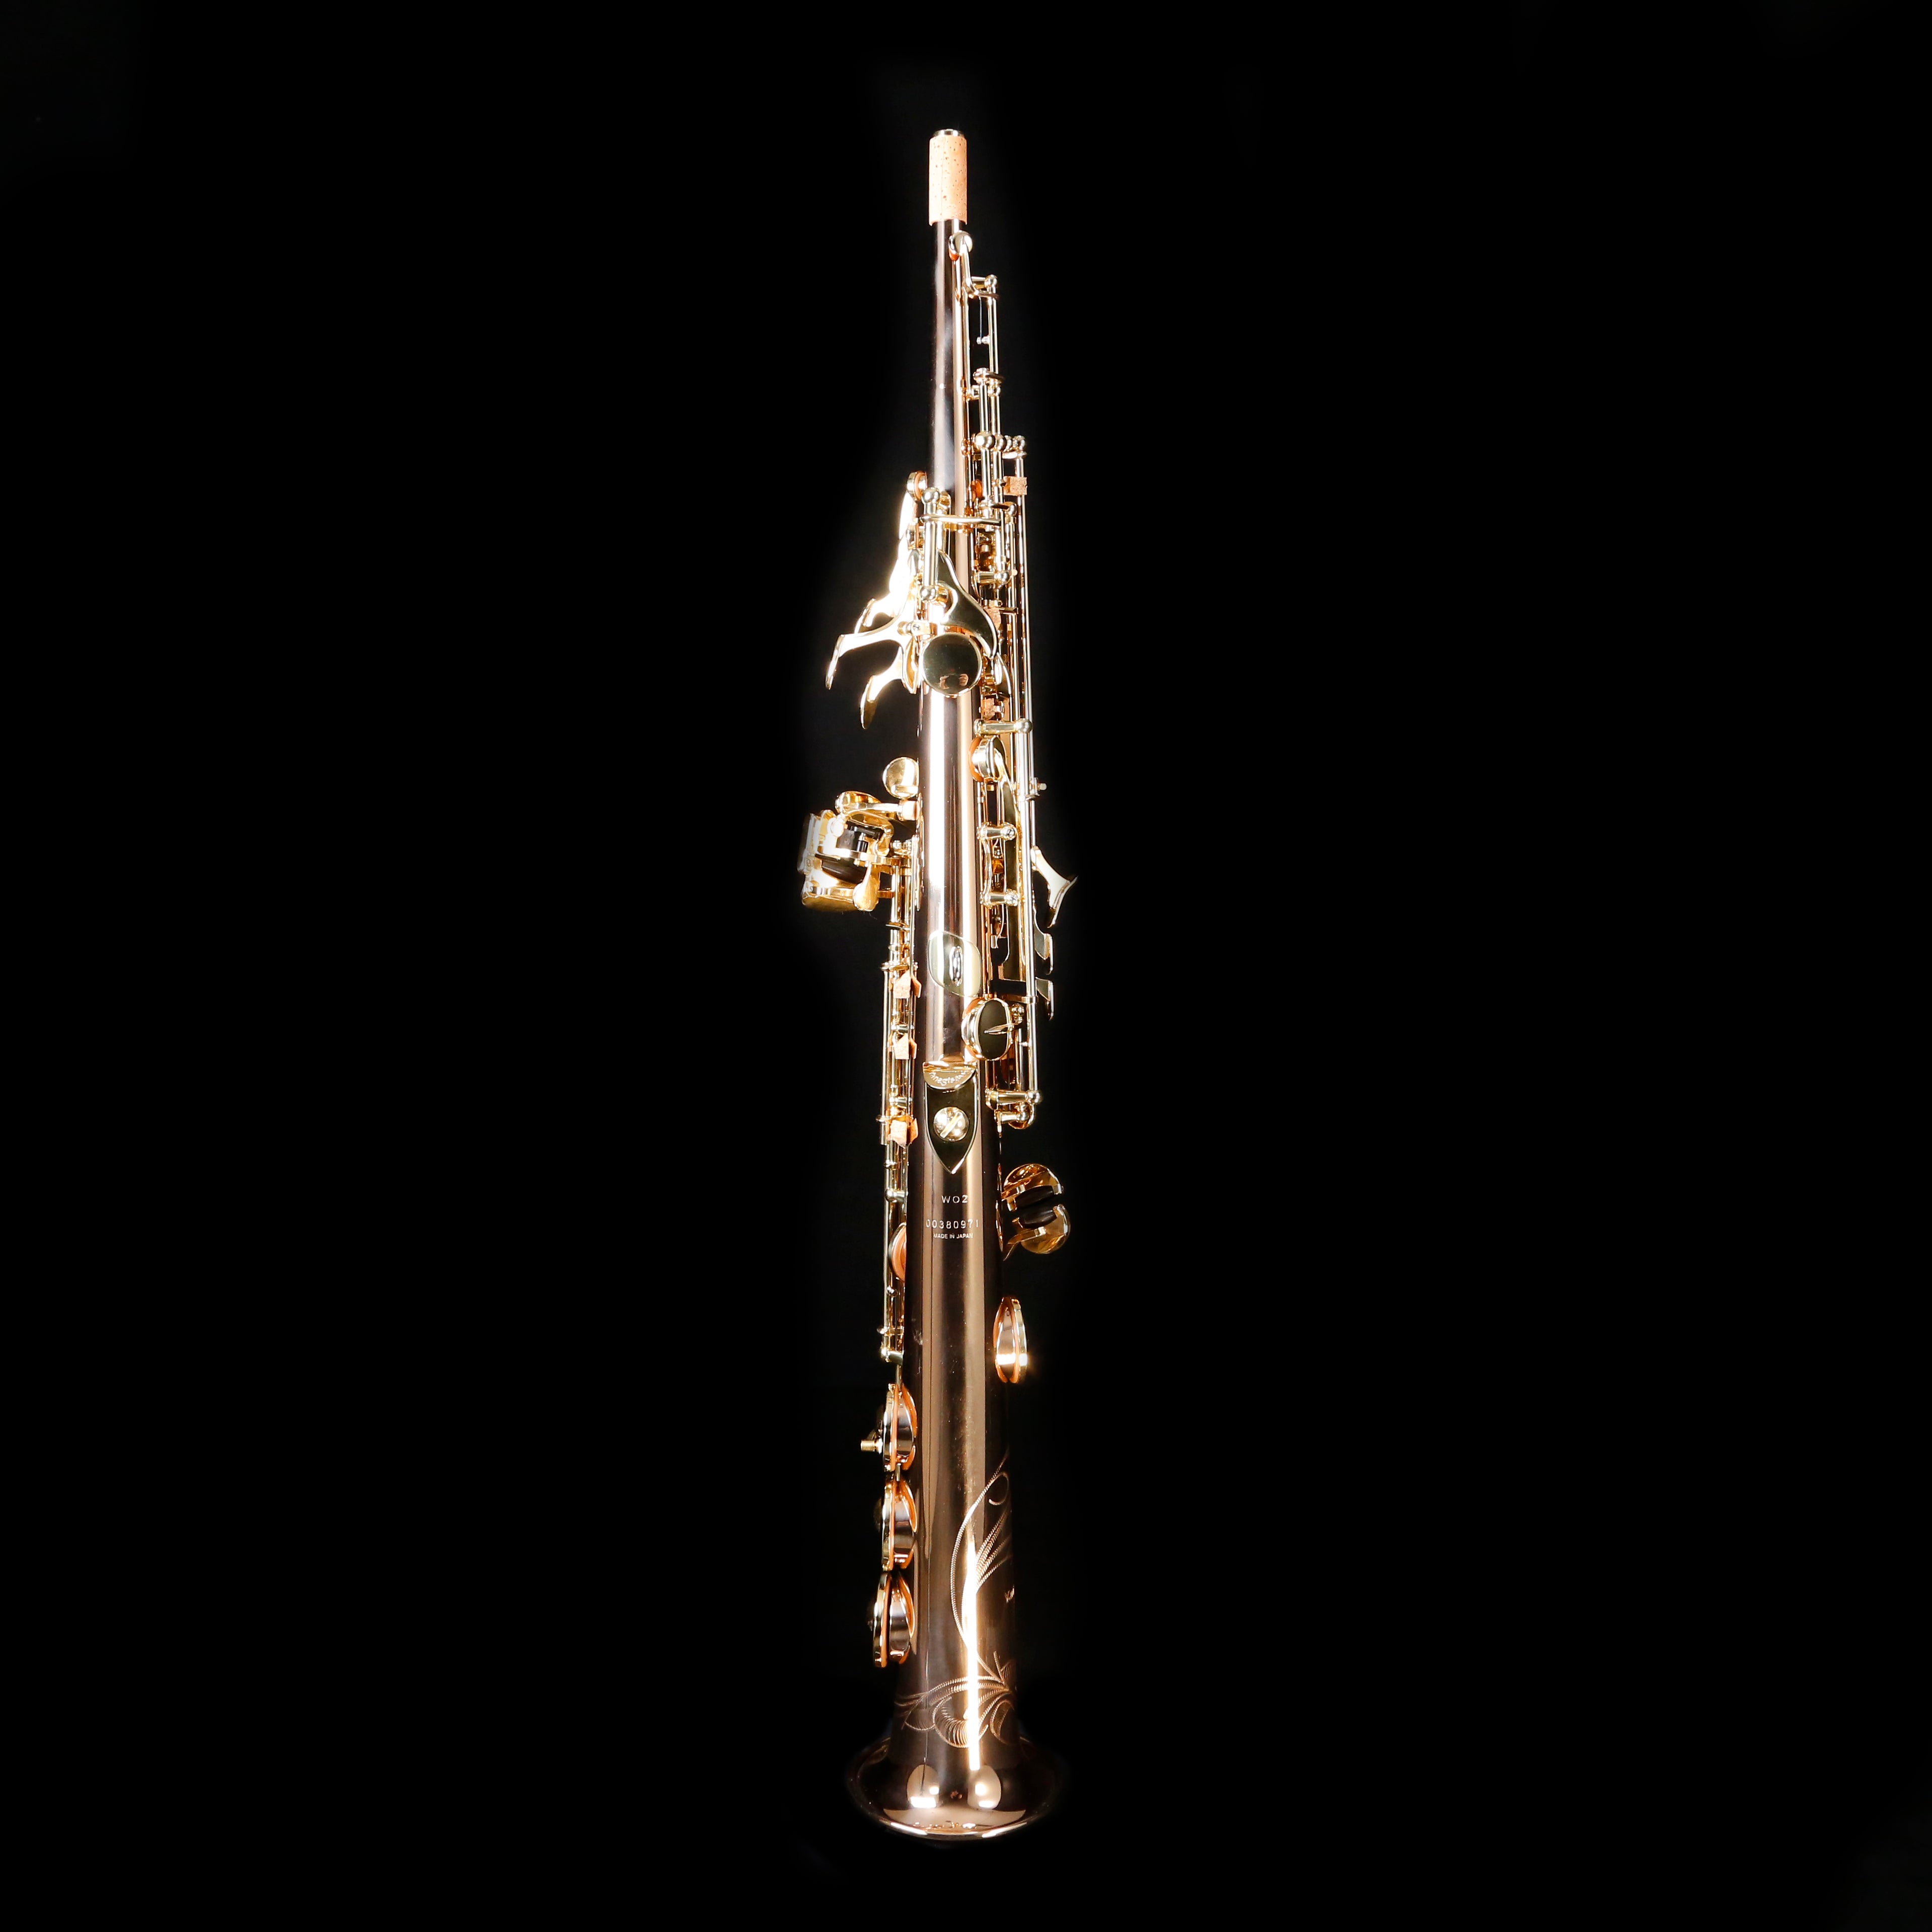 Yanagisawa SWO2 Bb Soprano Saxophone, Bronze, Straight One-Piece Body, High F#